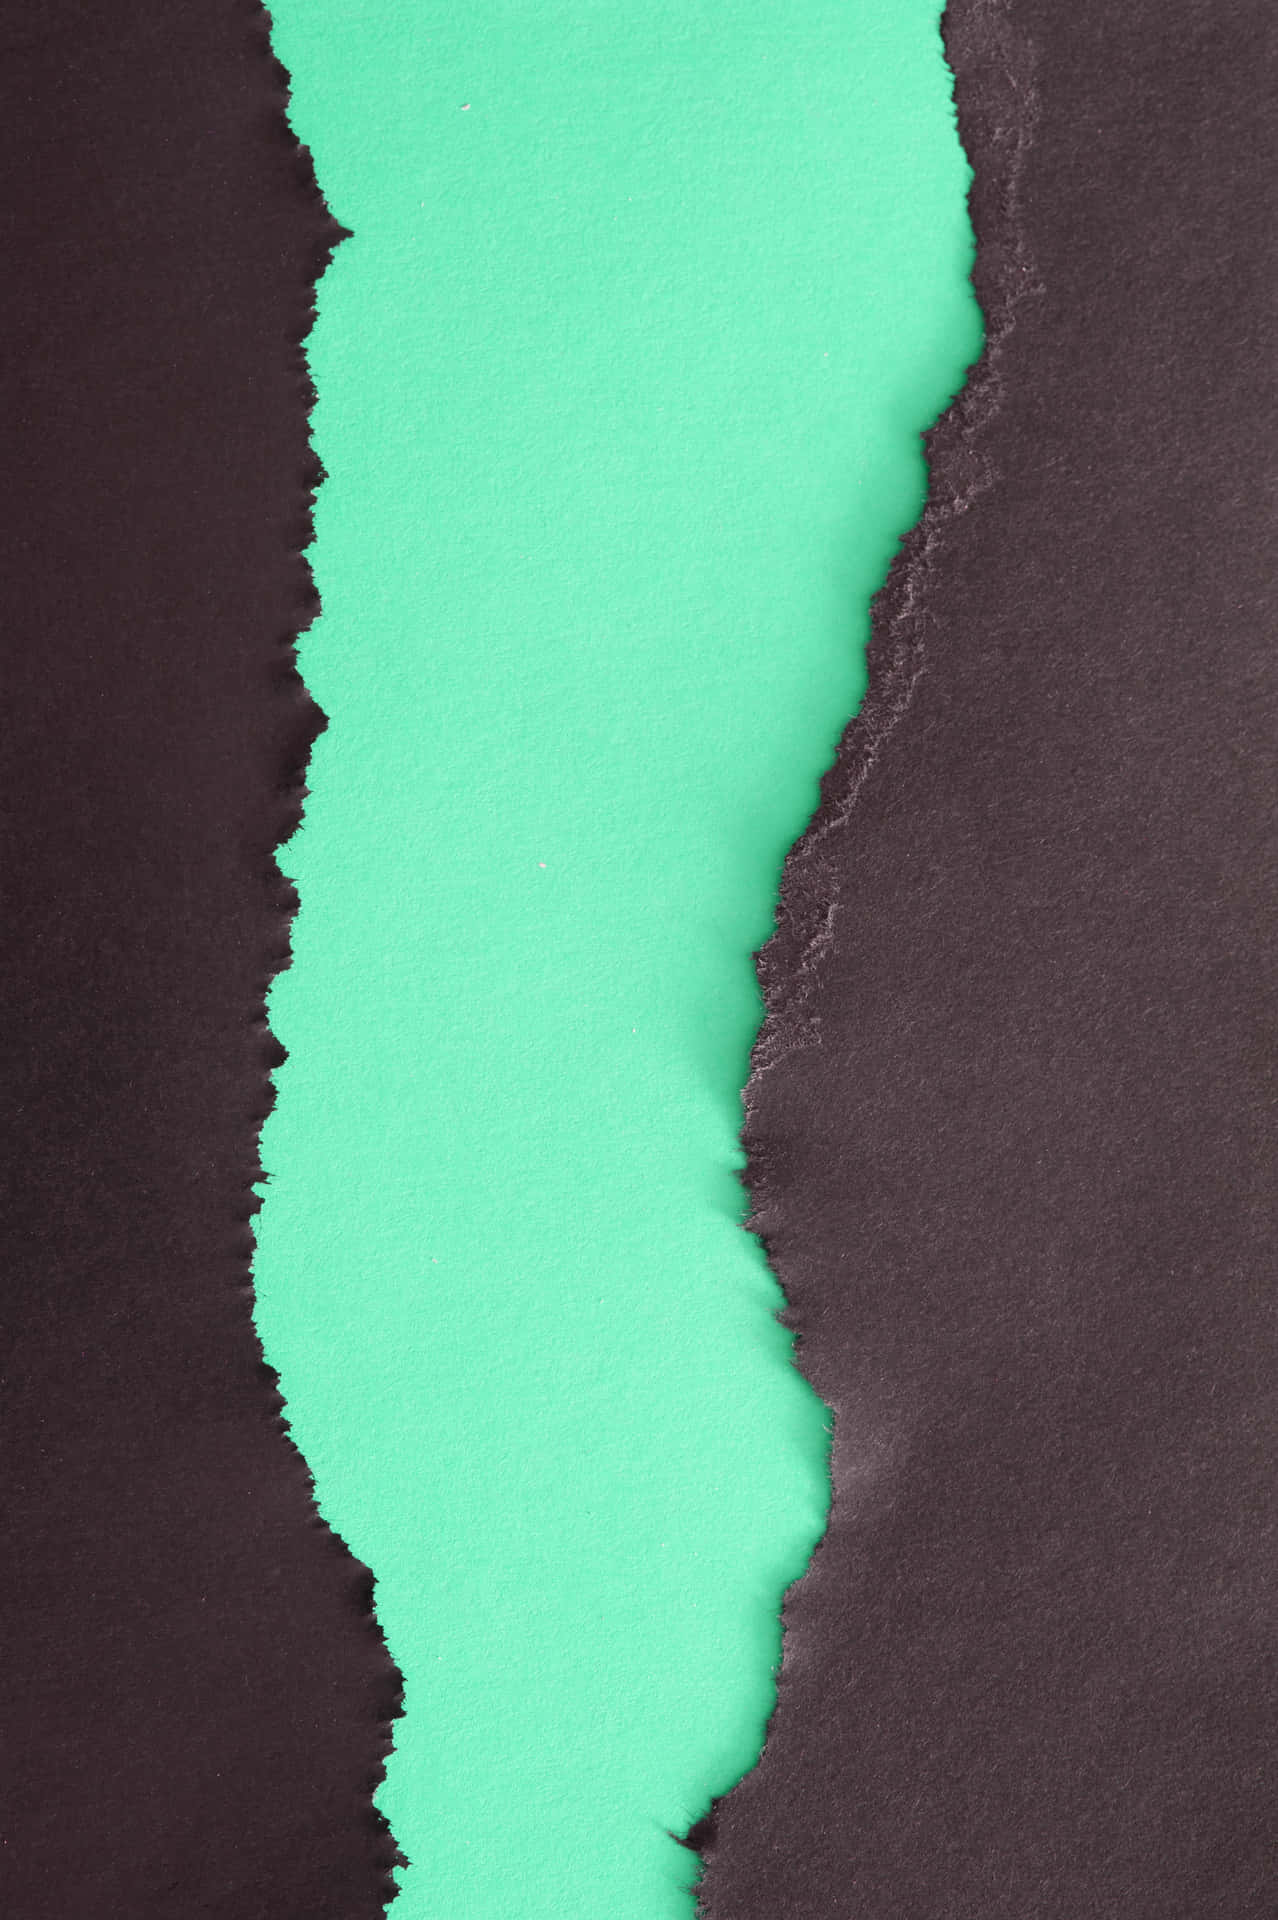 Schwarzeszerrissenes Papier Auf Blau-grünem Hintergrund Wallpaper